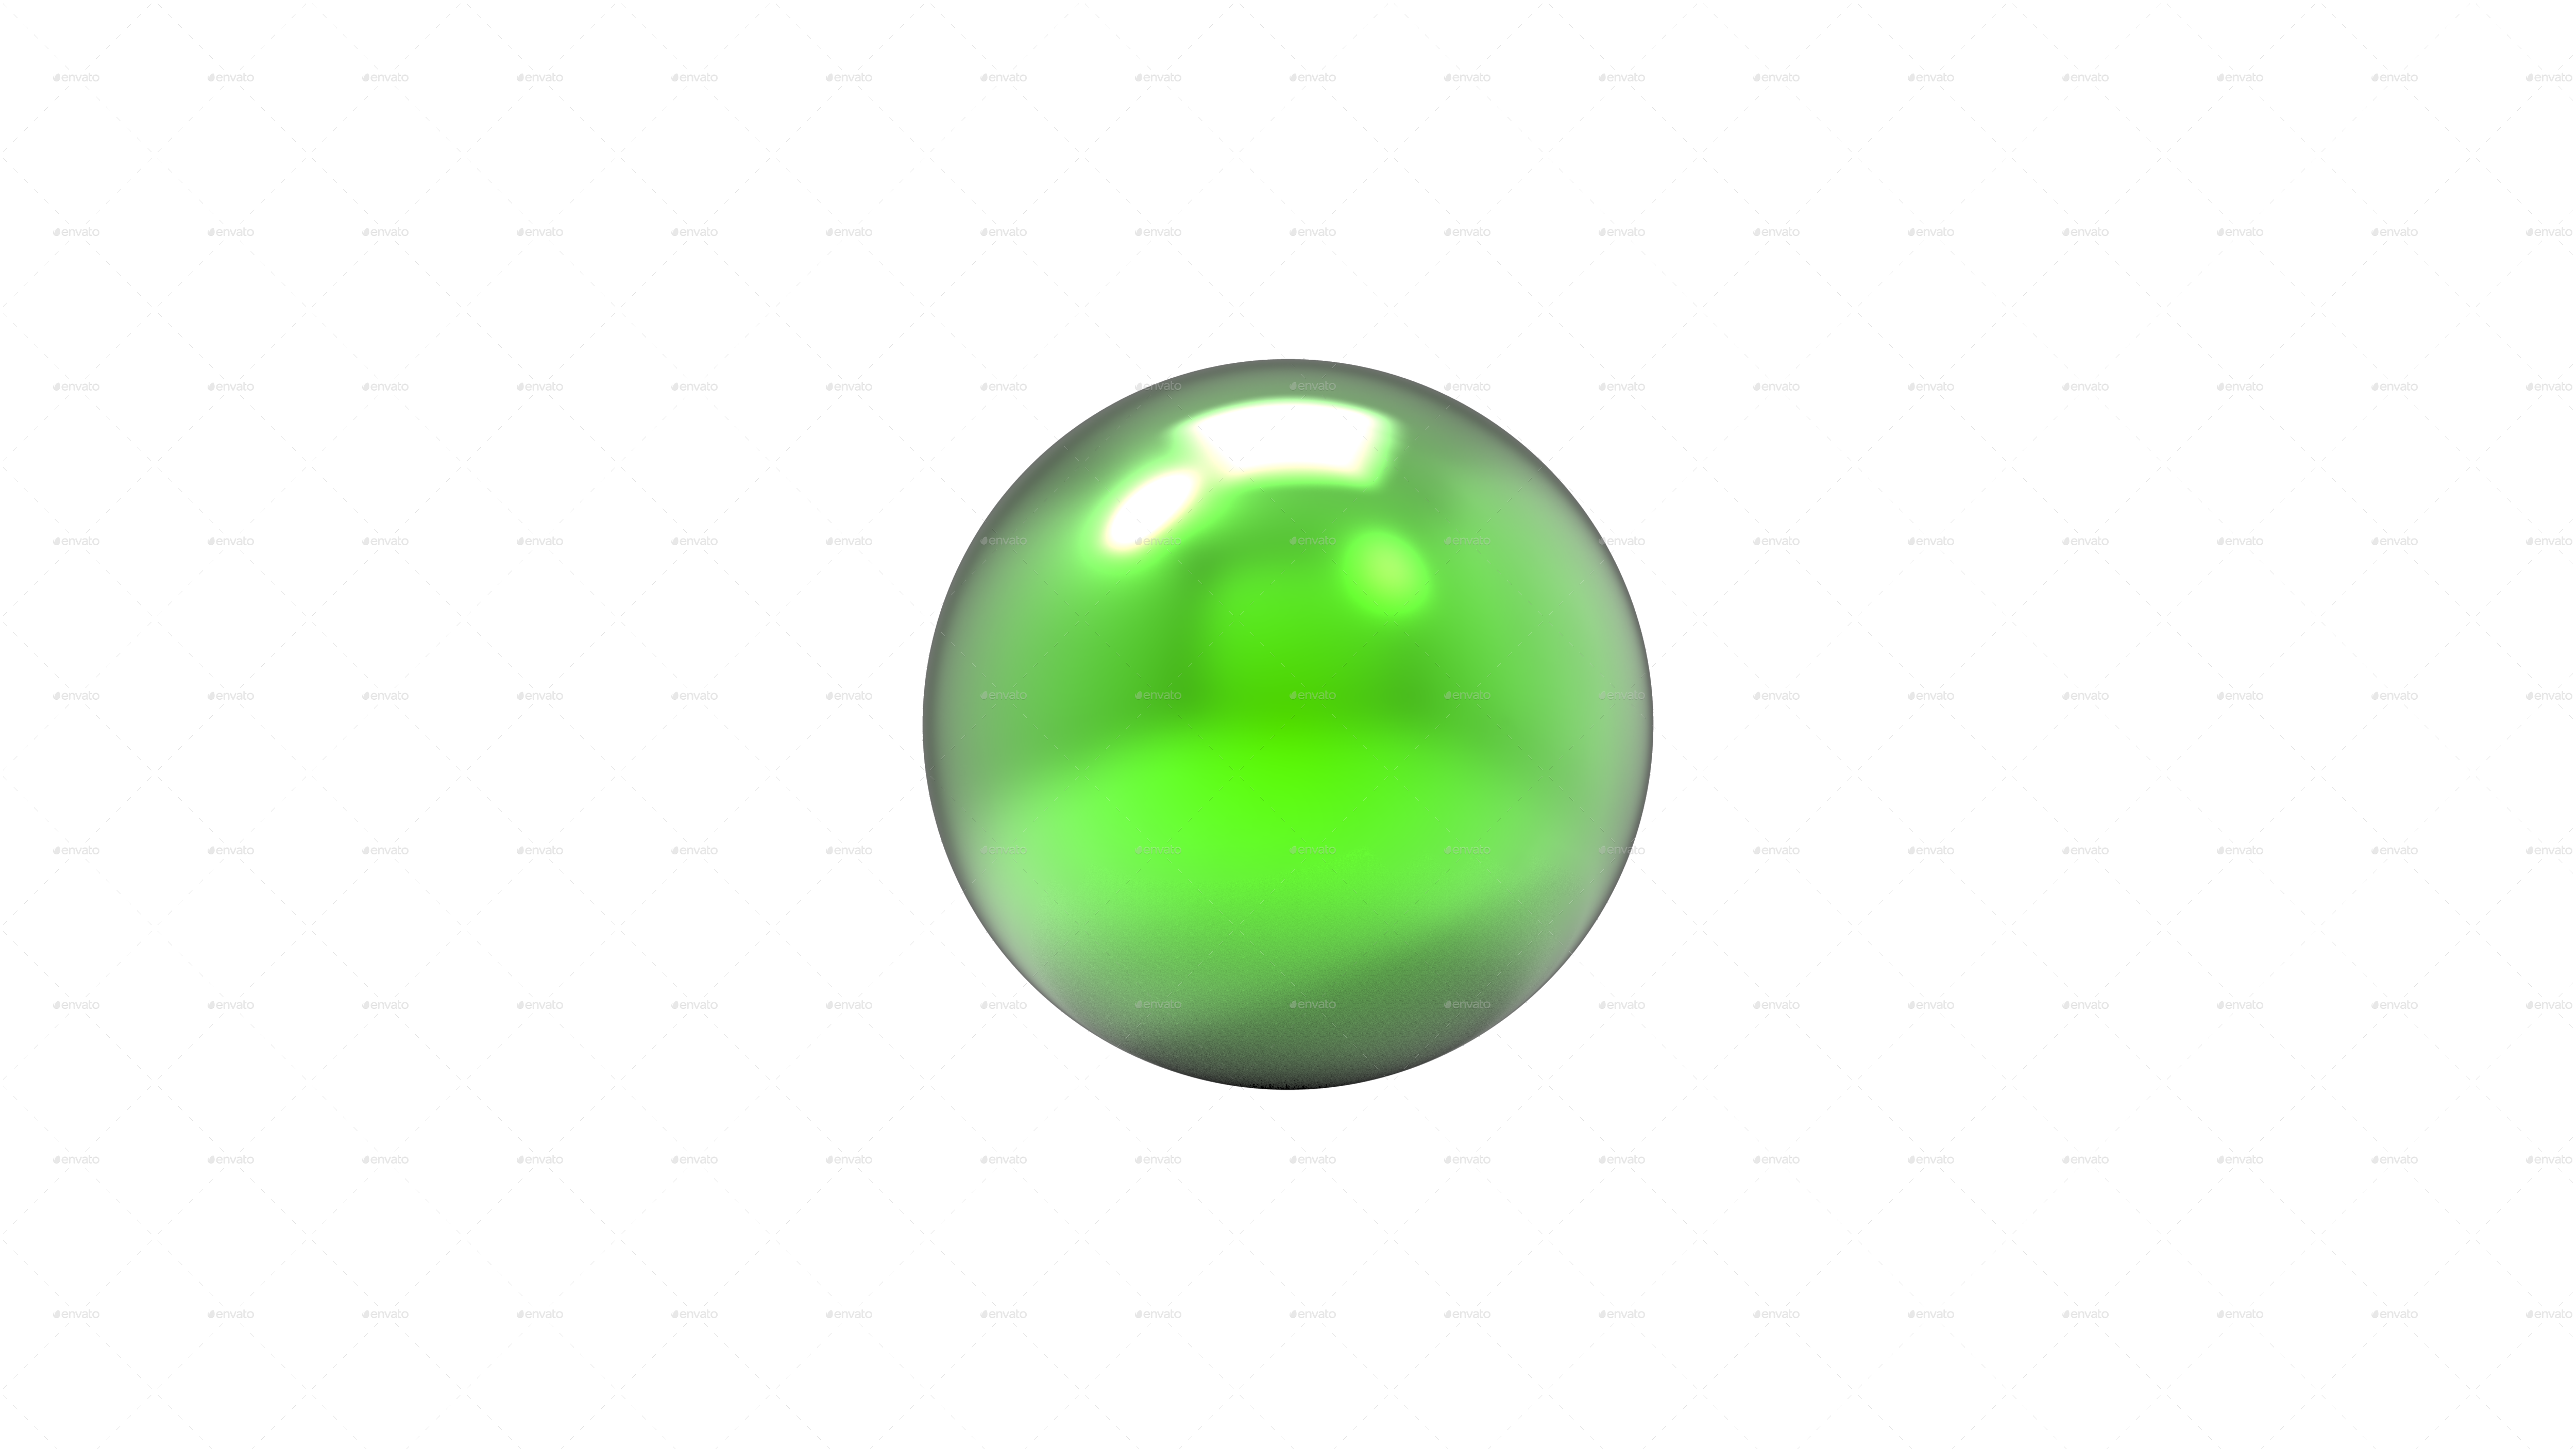 Spheres in 3D HD Renders by y-ram | GraphicRiver